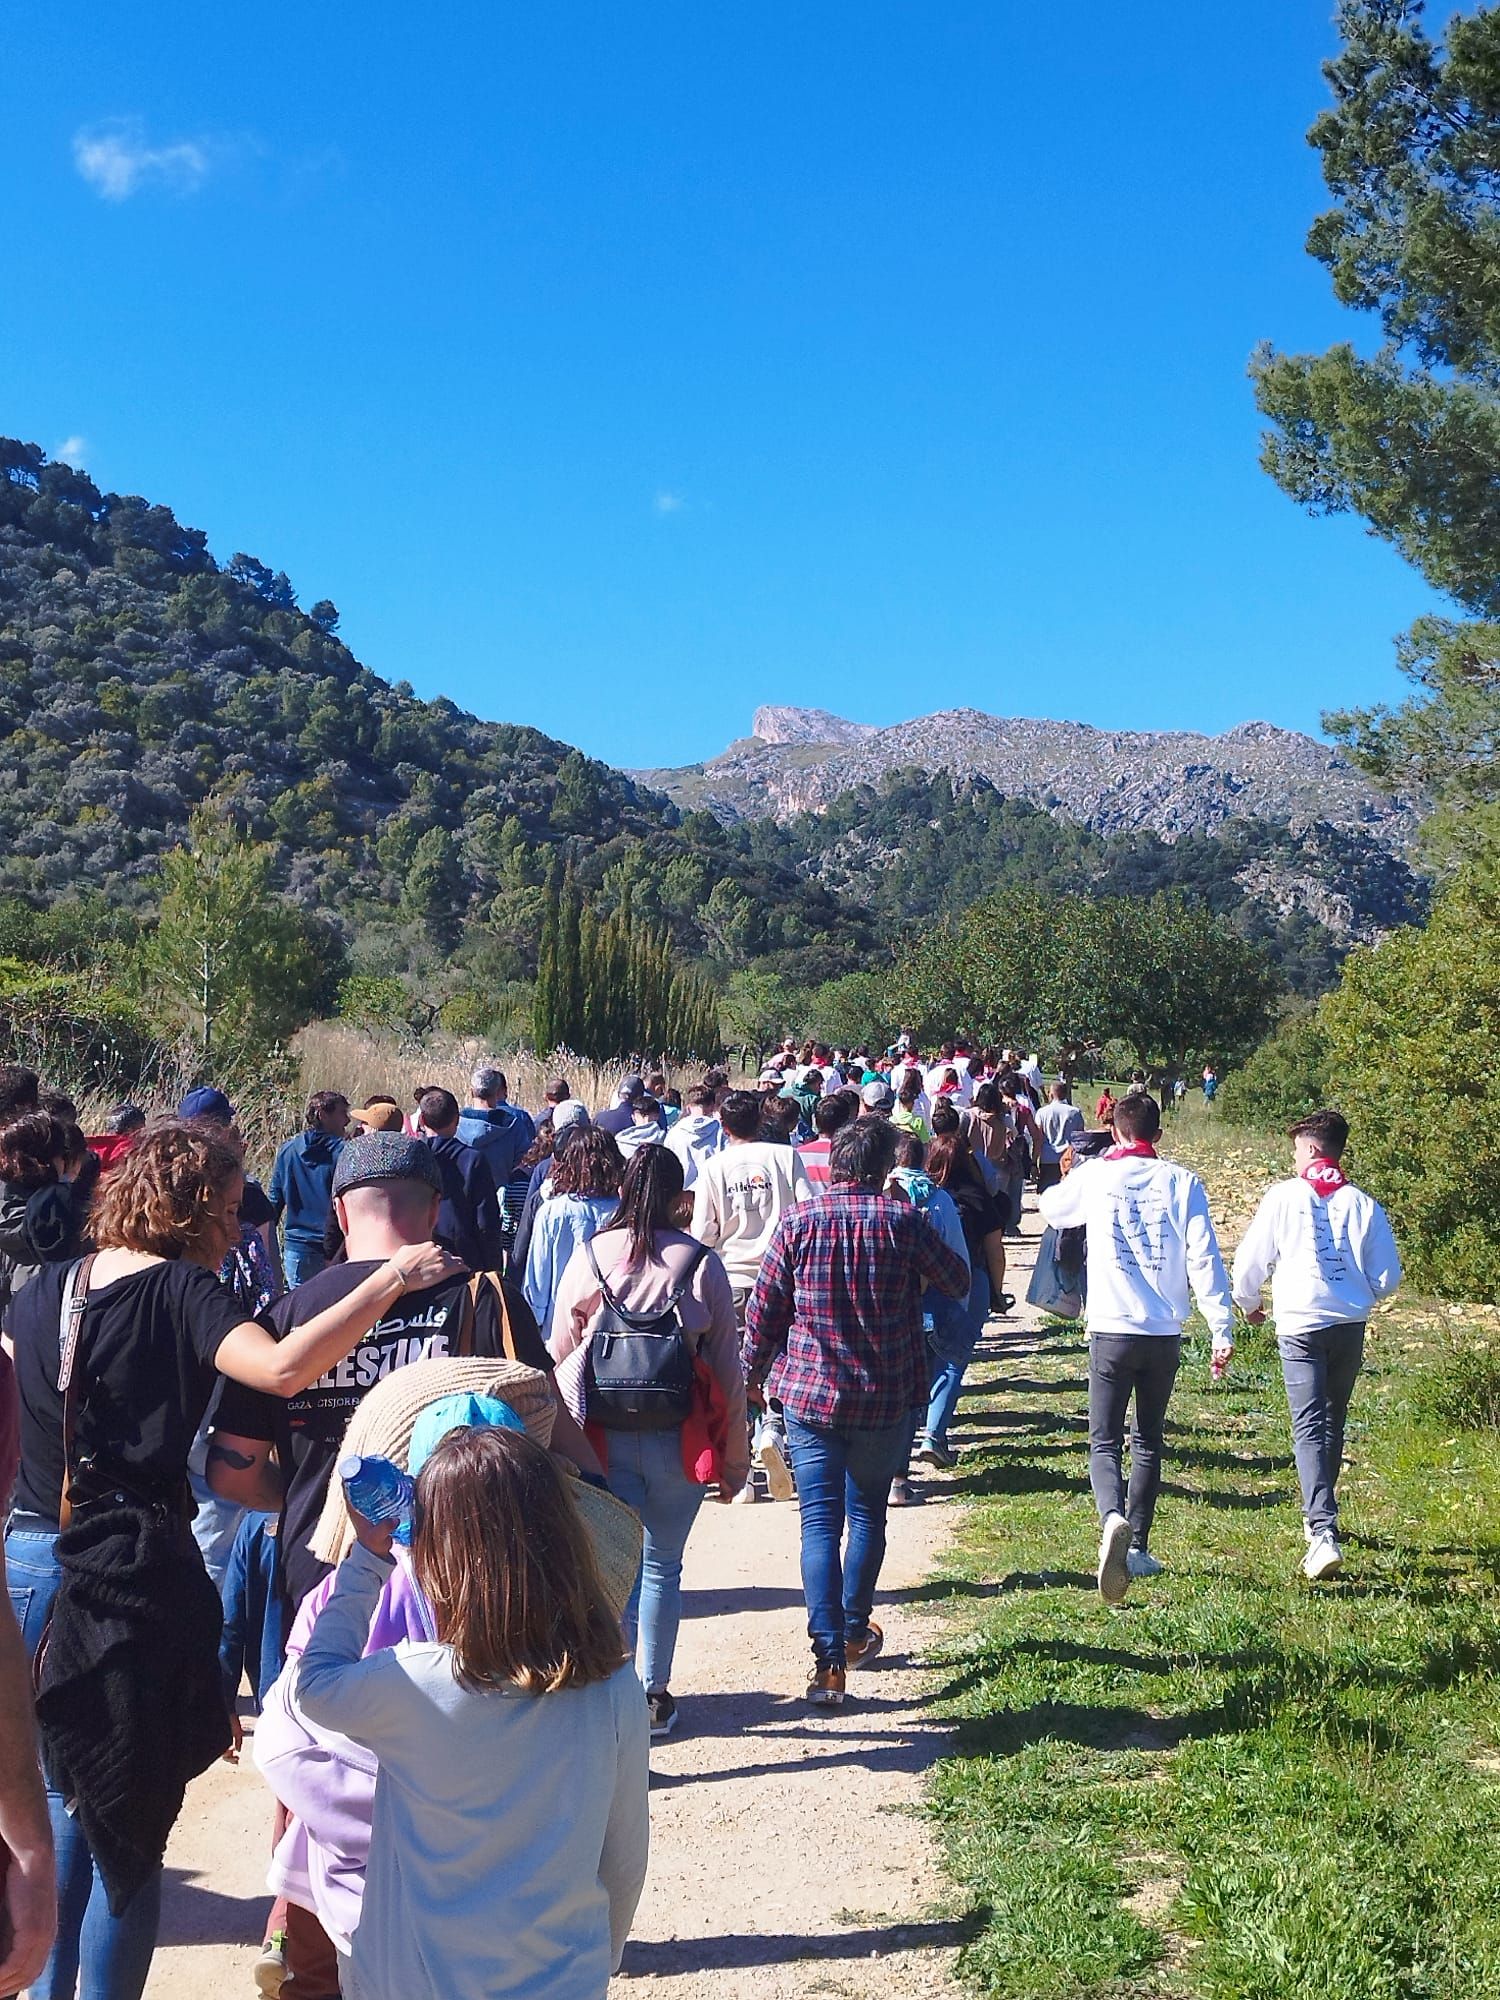 Semana Santa | Esta es la tradición del Lunes de Pascua en algunos pueblos de Mallorca